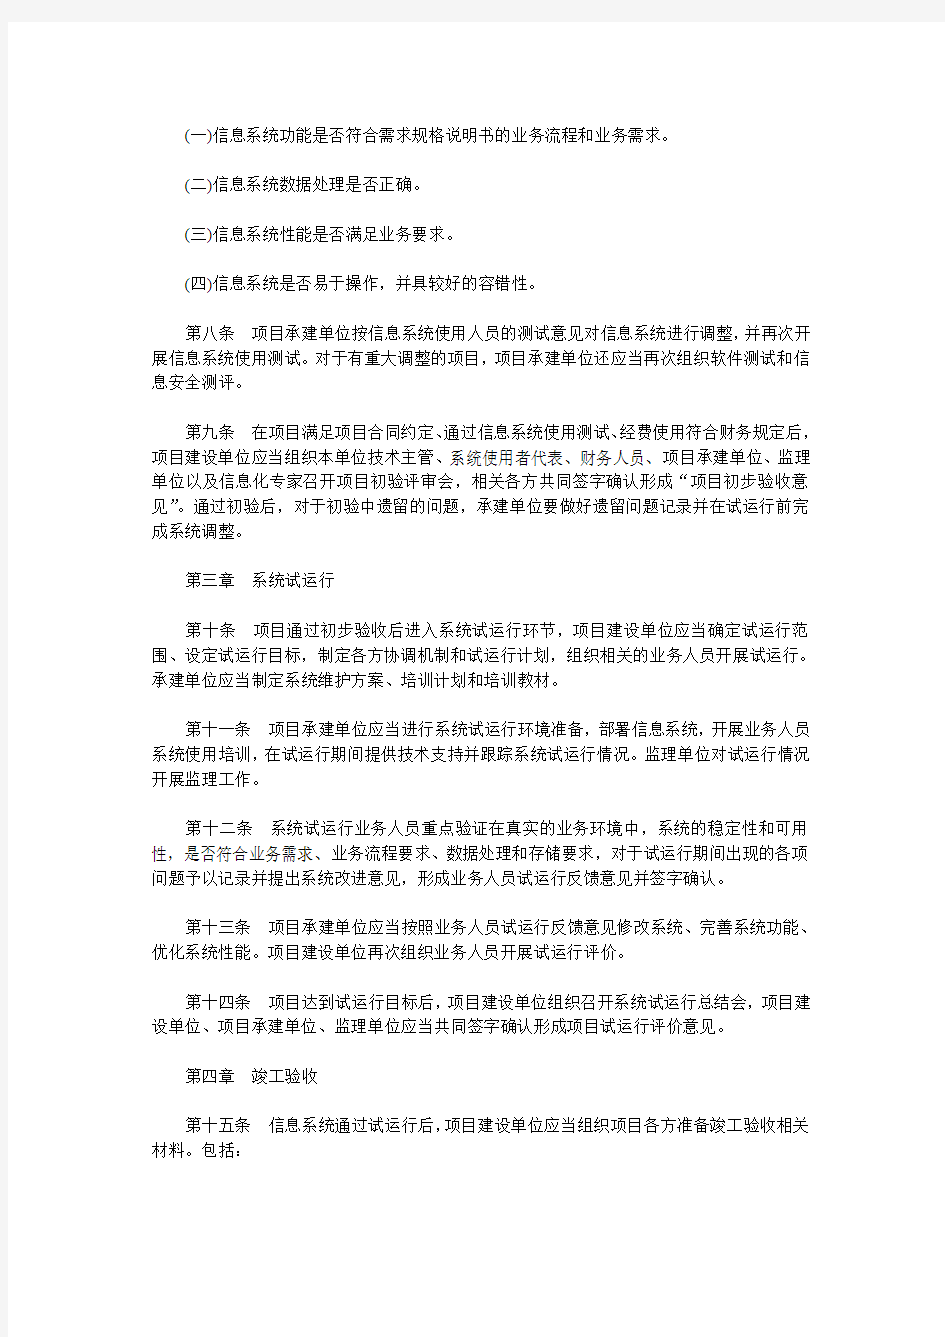 北京市市级信息系统升级改造项目验收管理办法